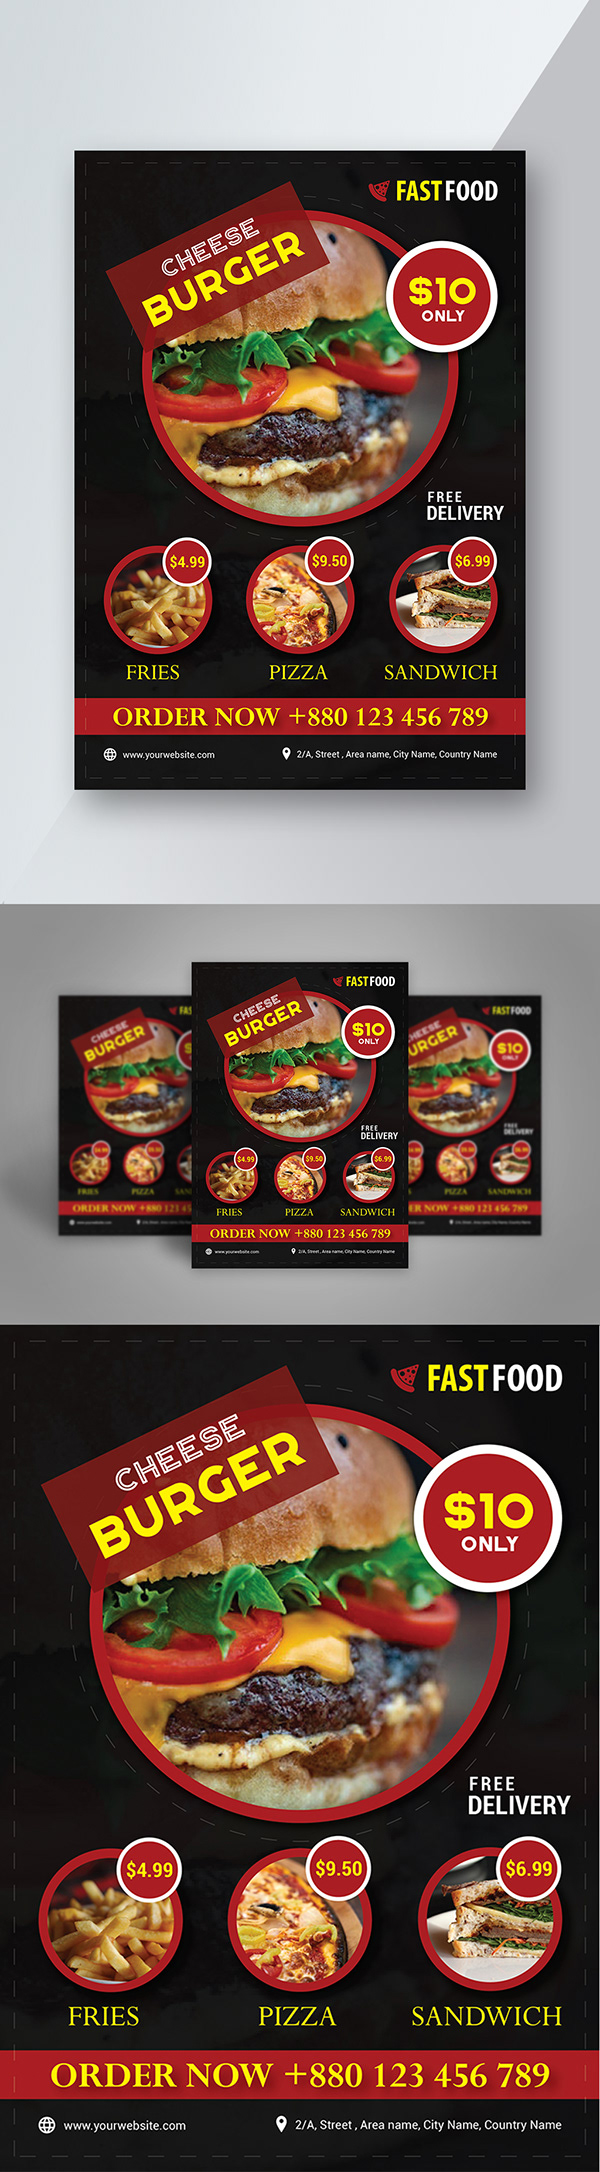 Fast Food Flyer Design